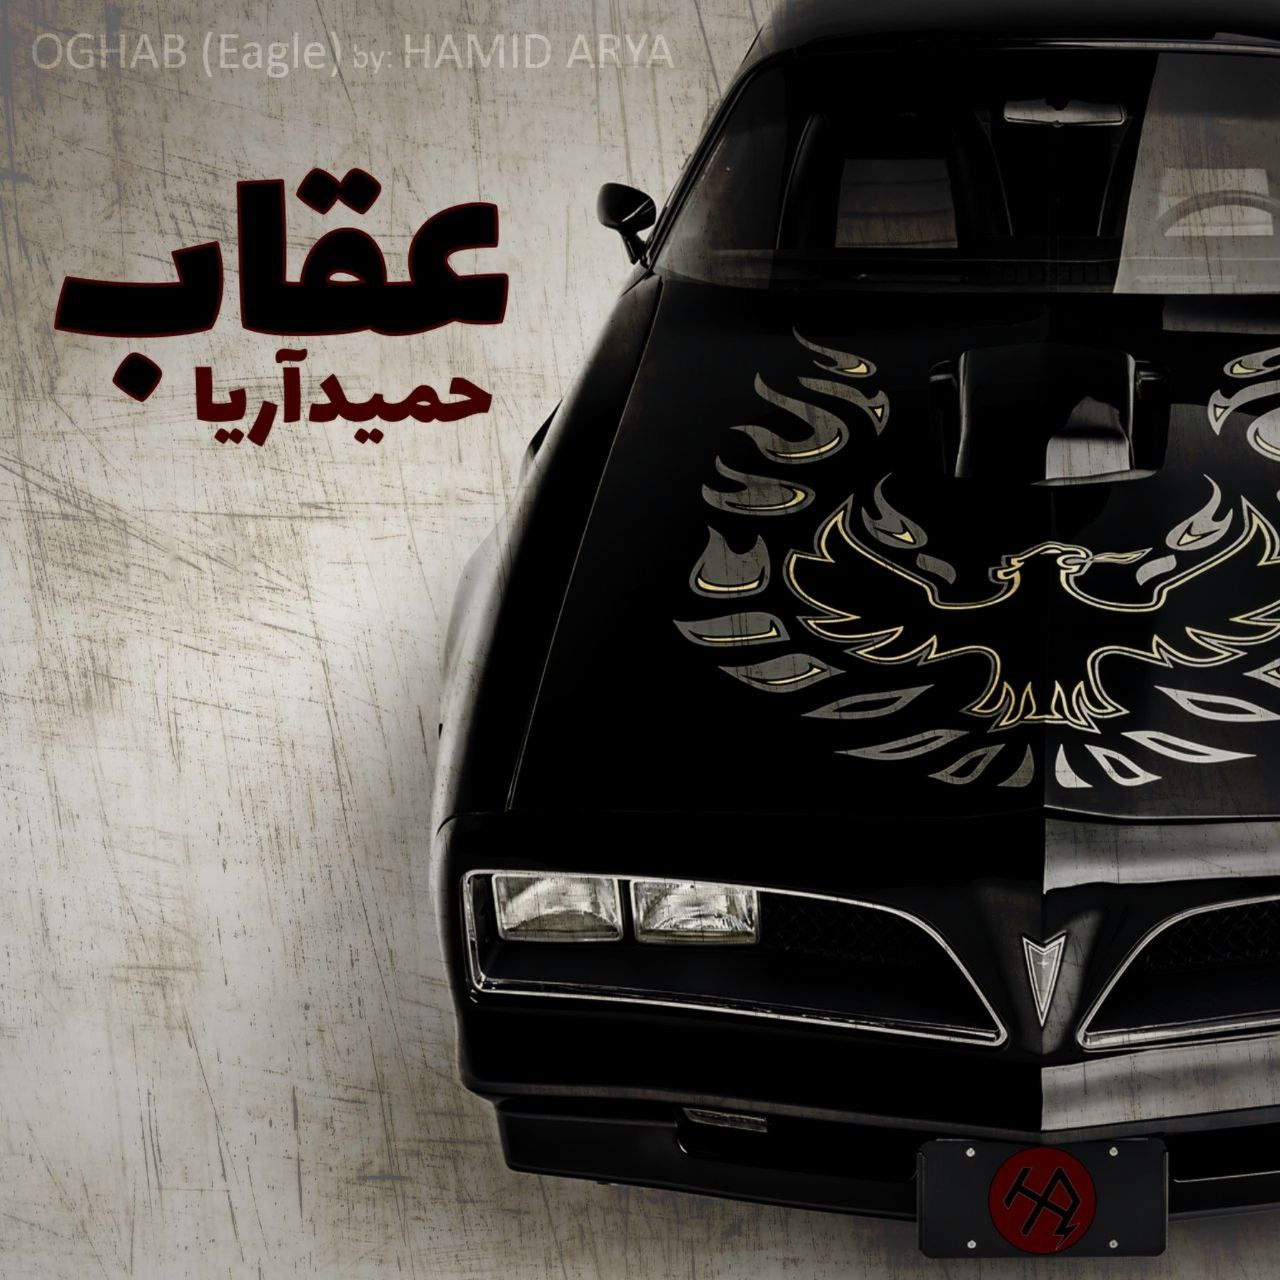 Hamid Arya - Oghab Album